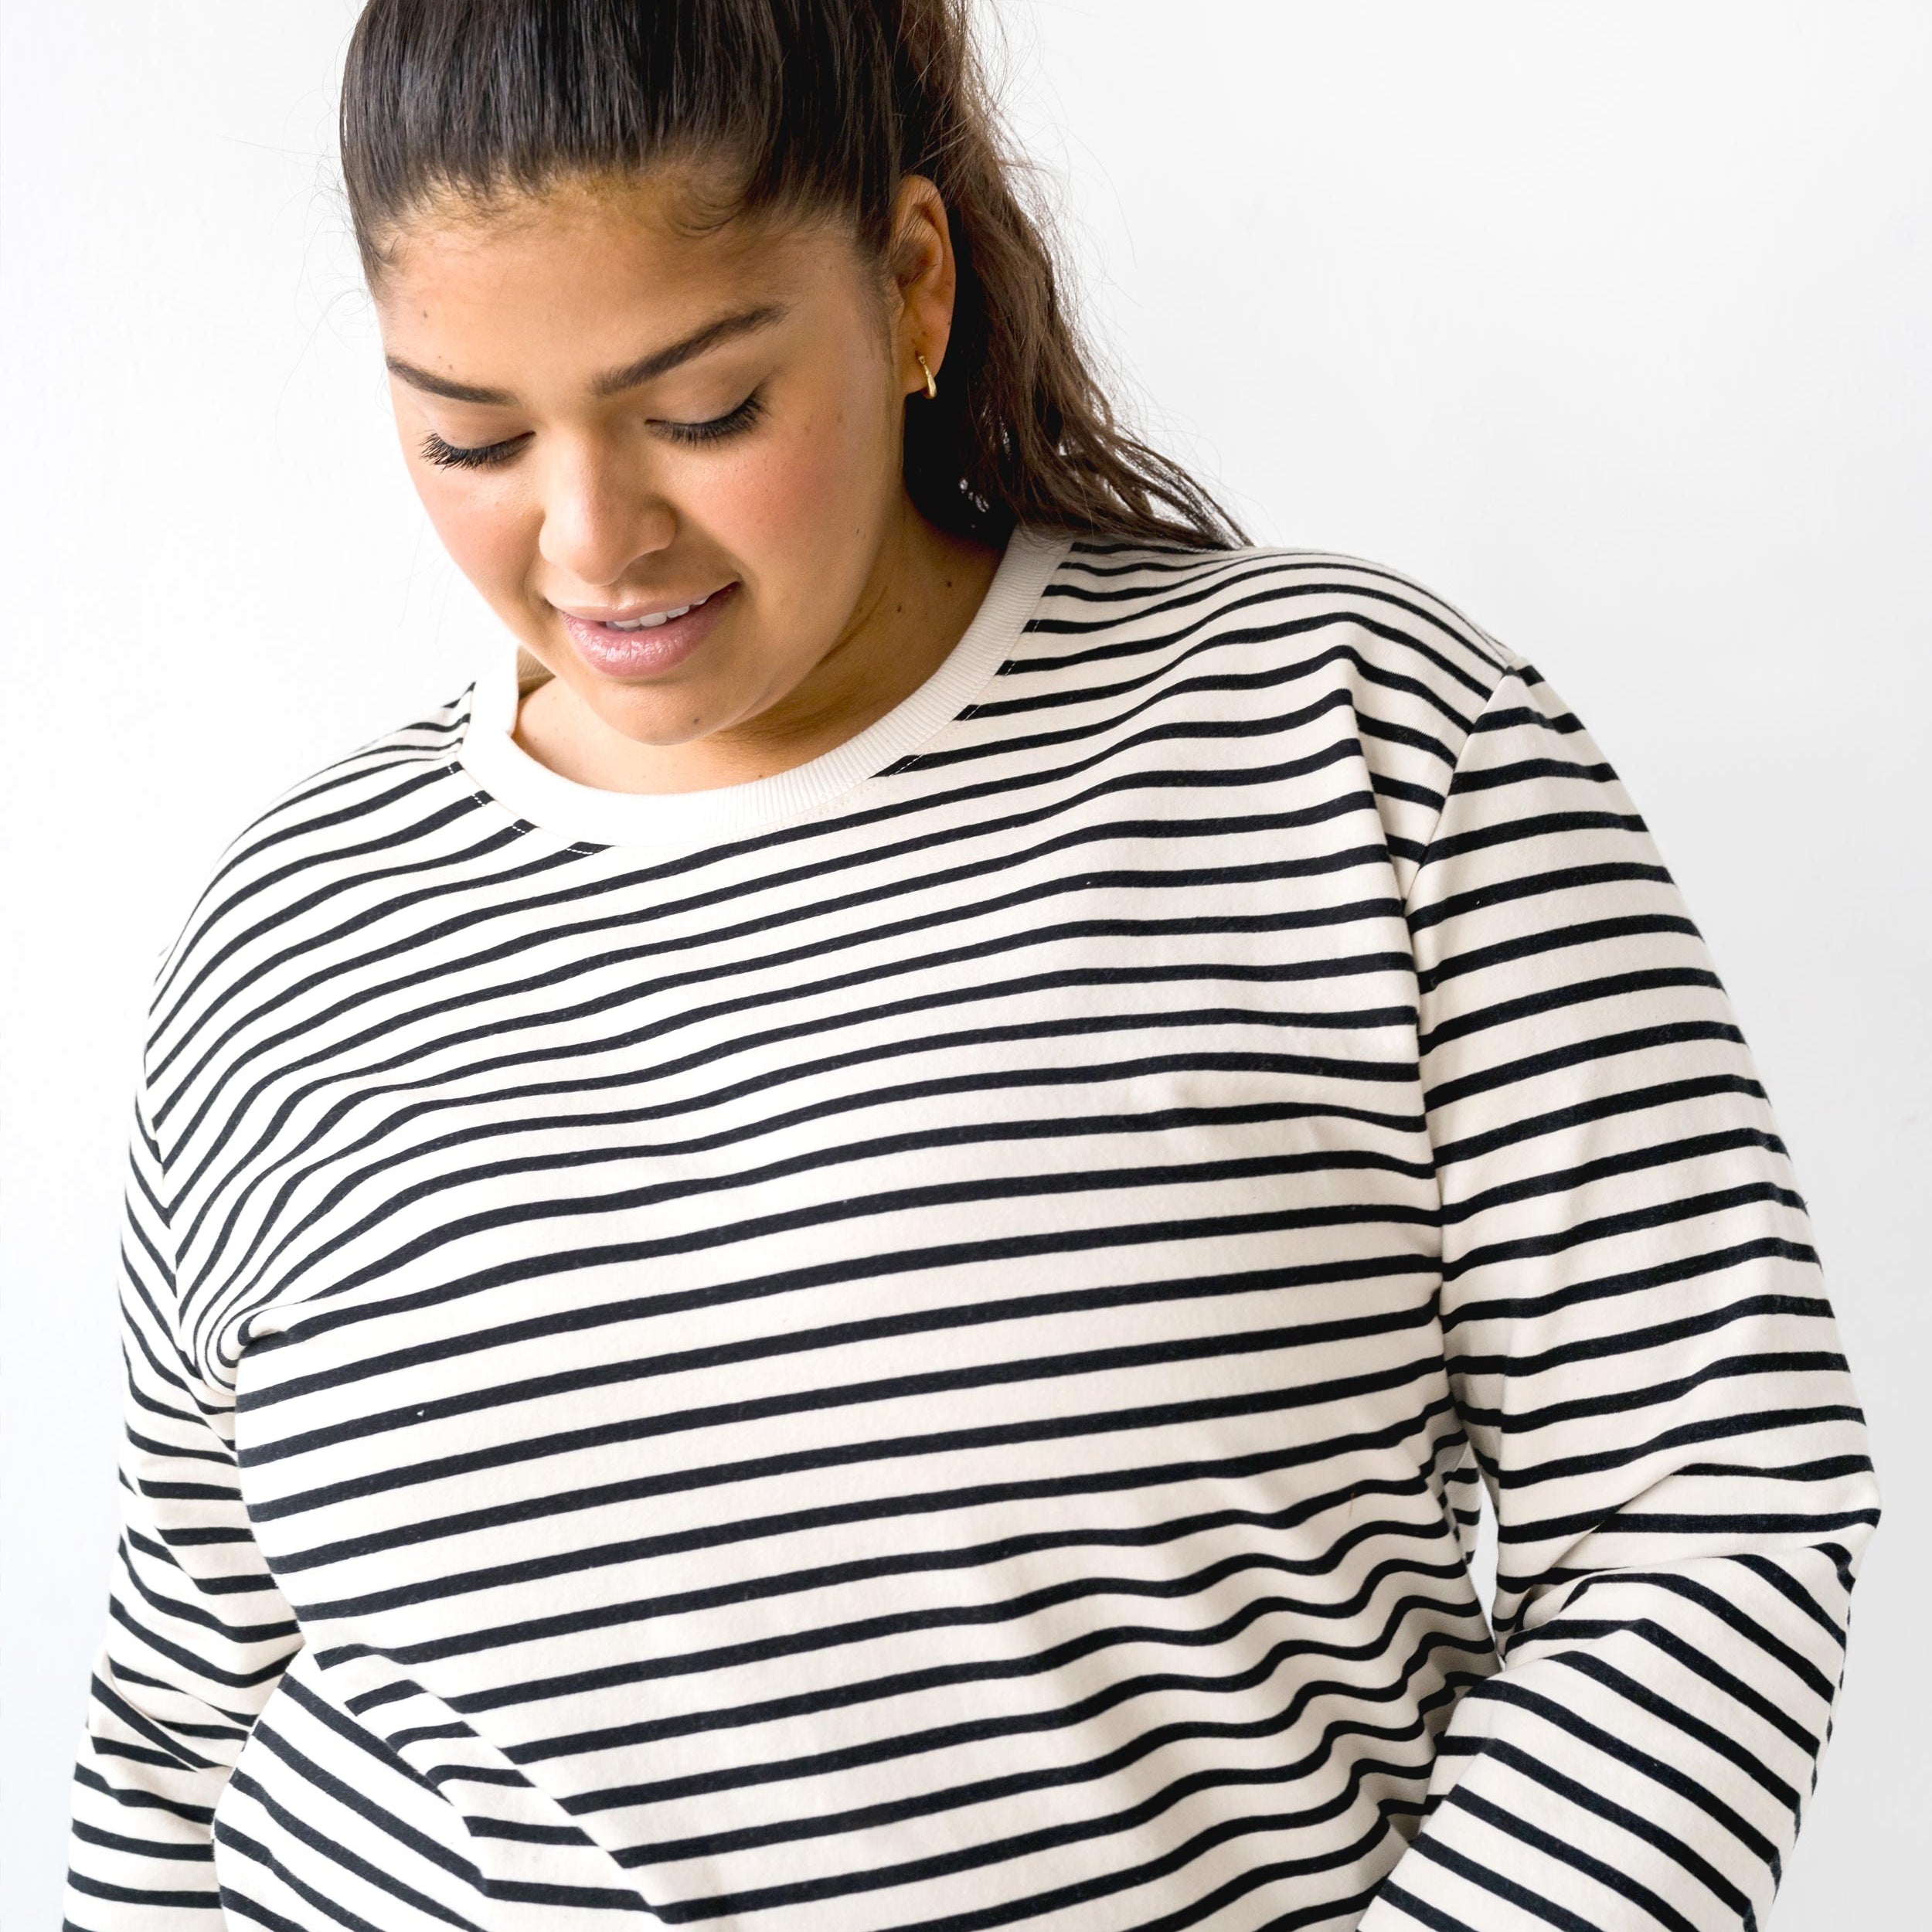 The Striped Crewneck Sweatshirt | FRANC Sustainable Clothing